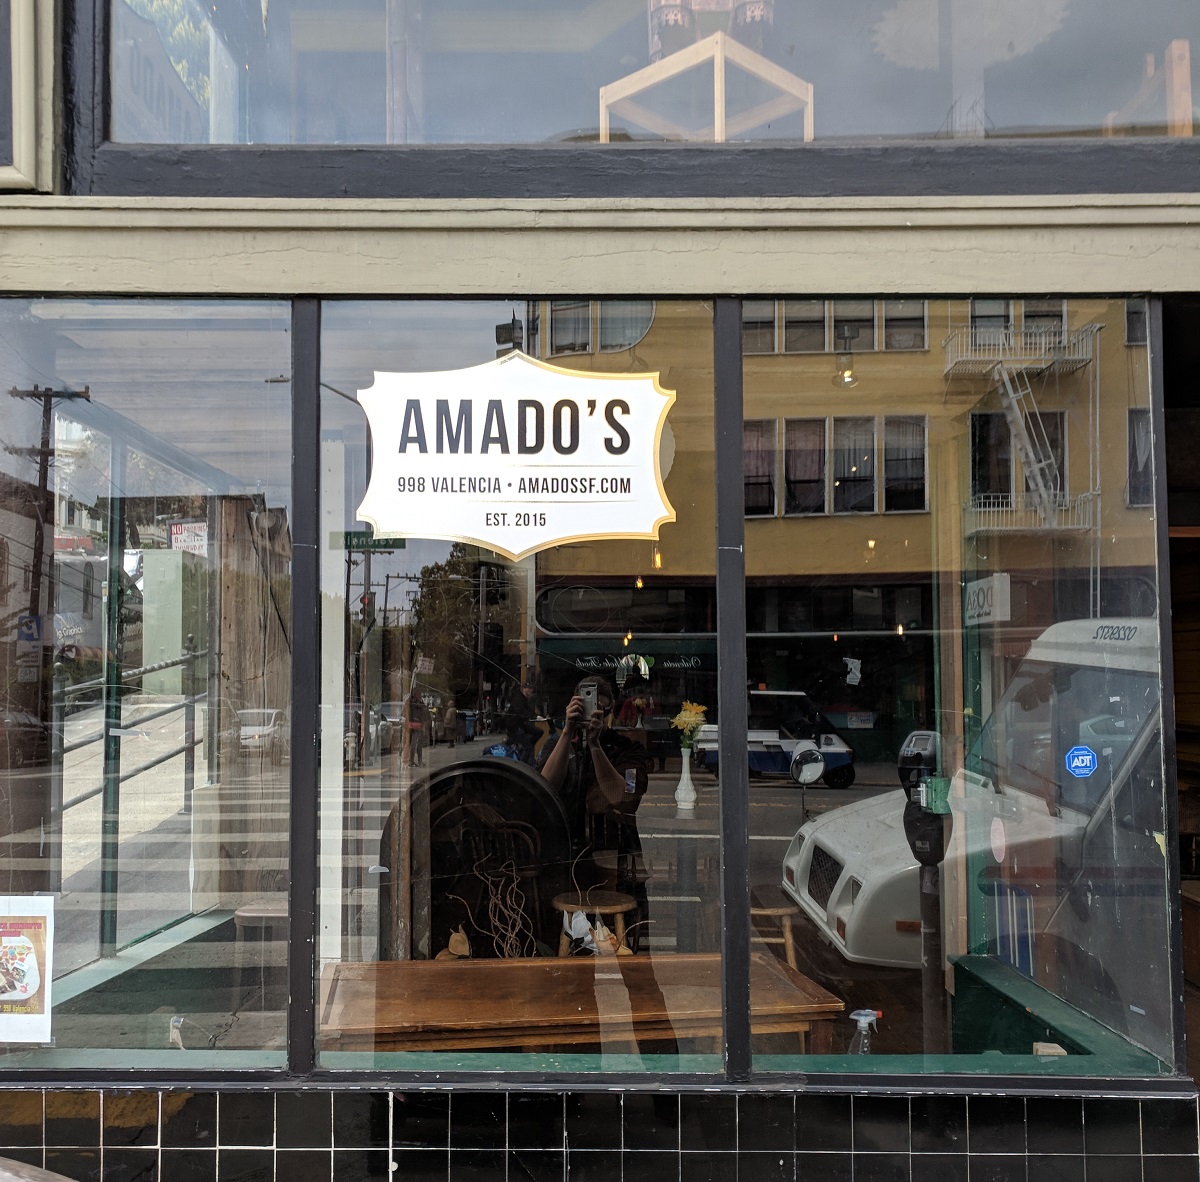 Amado's window graphic